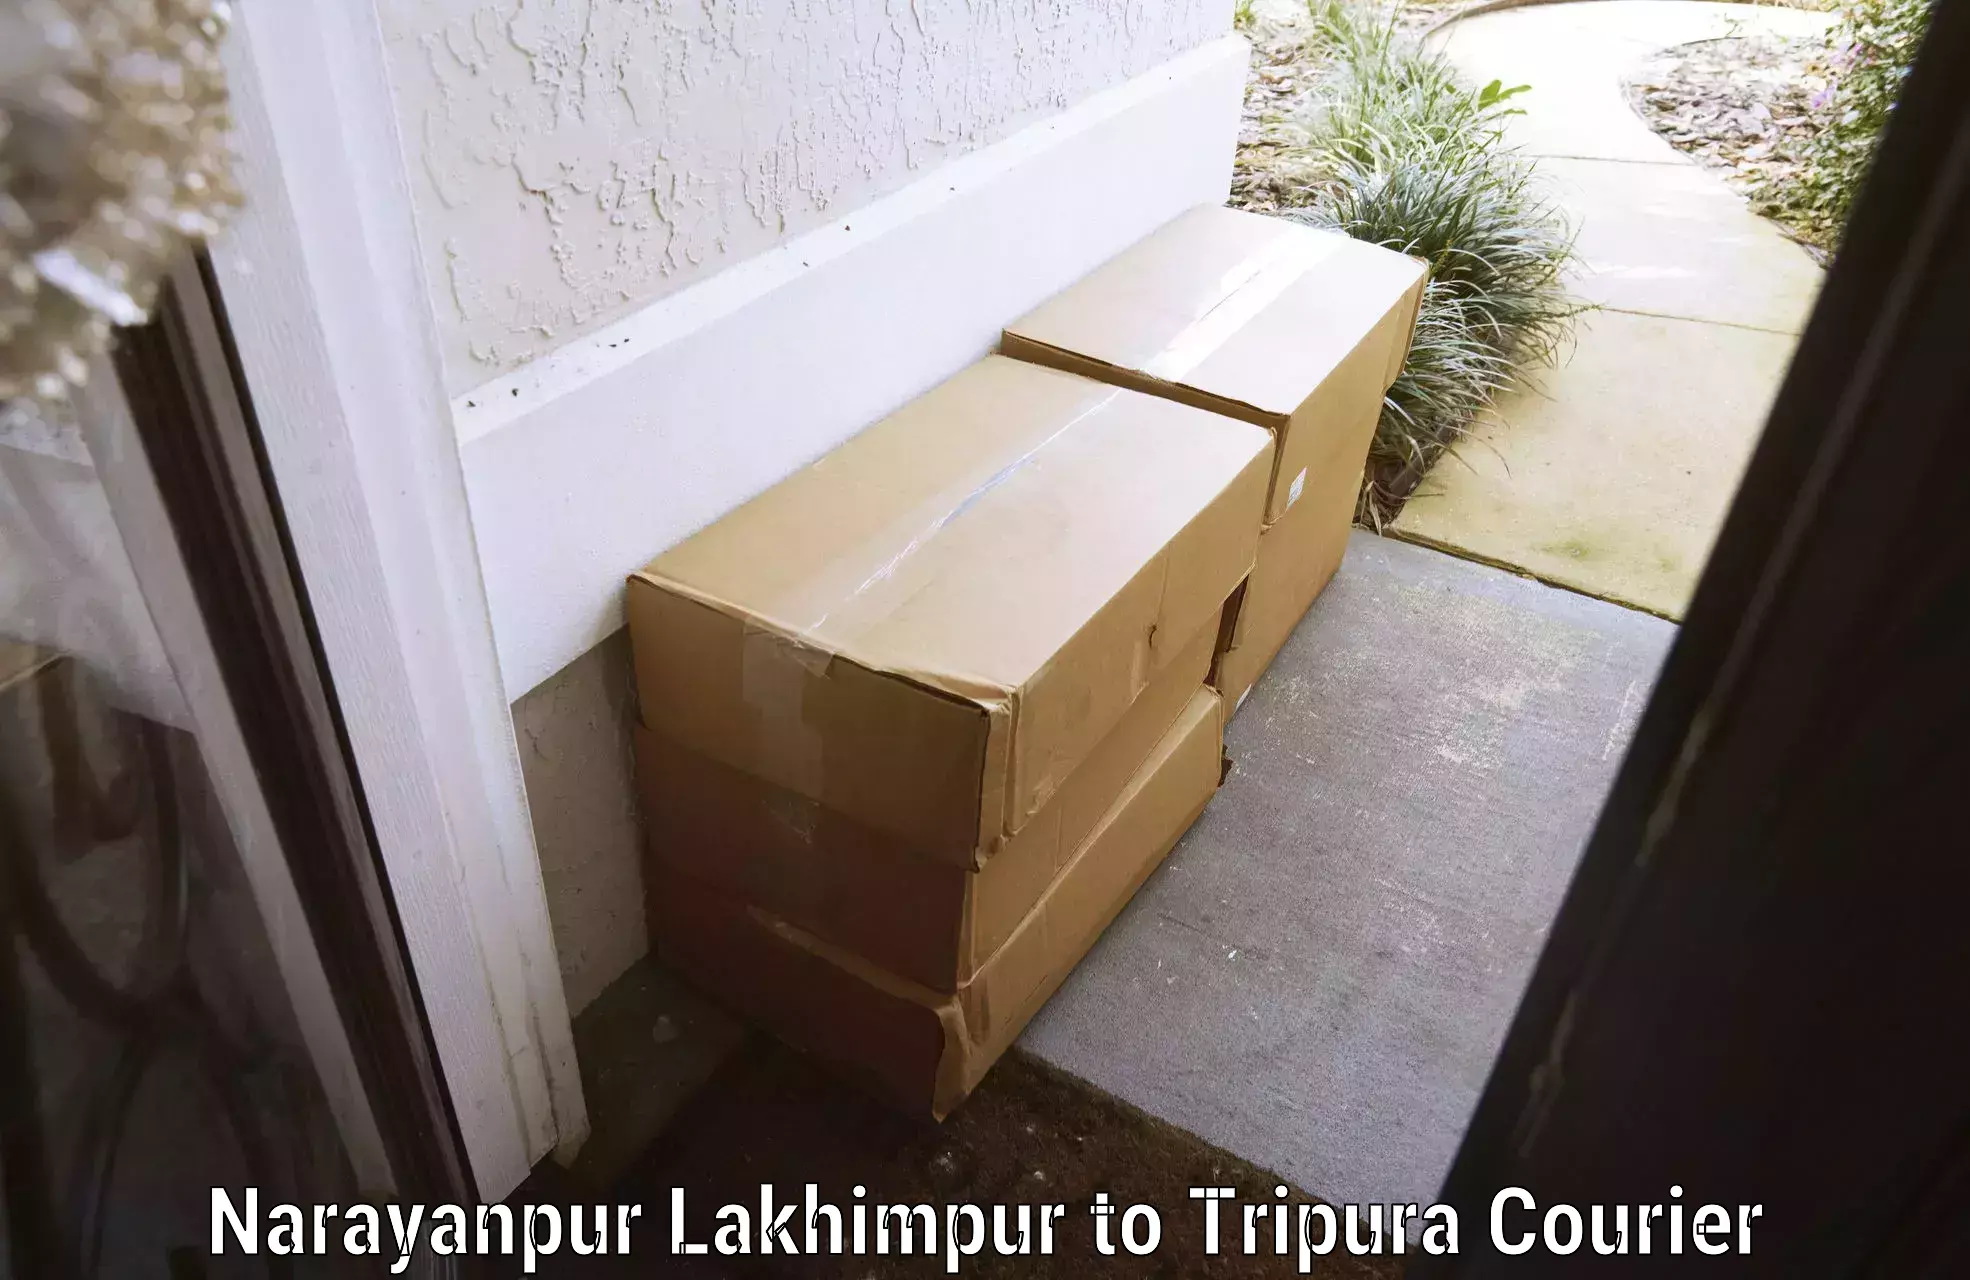 Luggage transport solutions Narayanpur Lakhimpur to Radhakishorepur